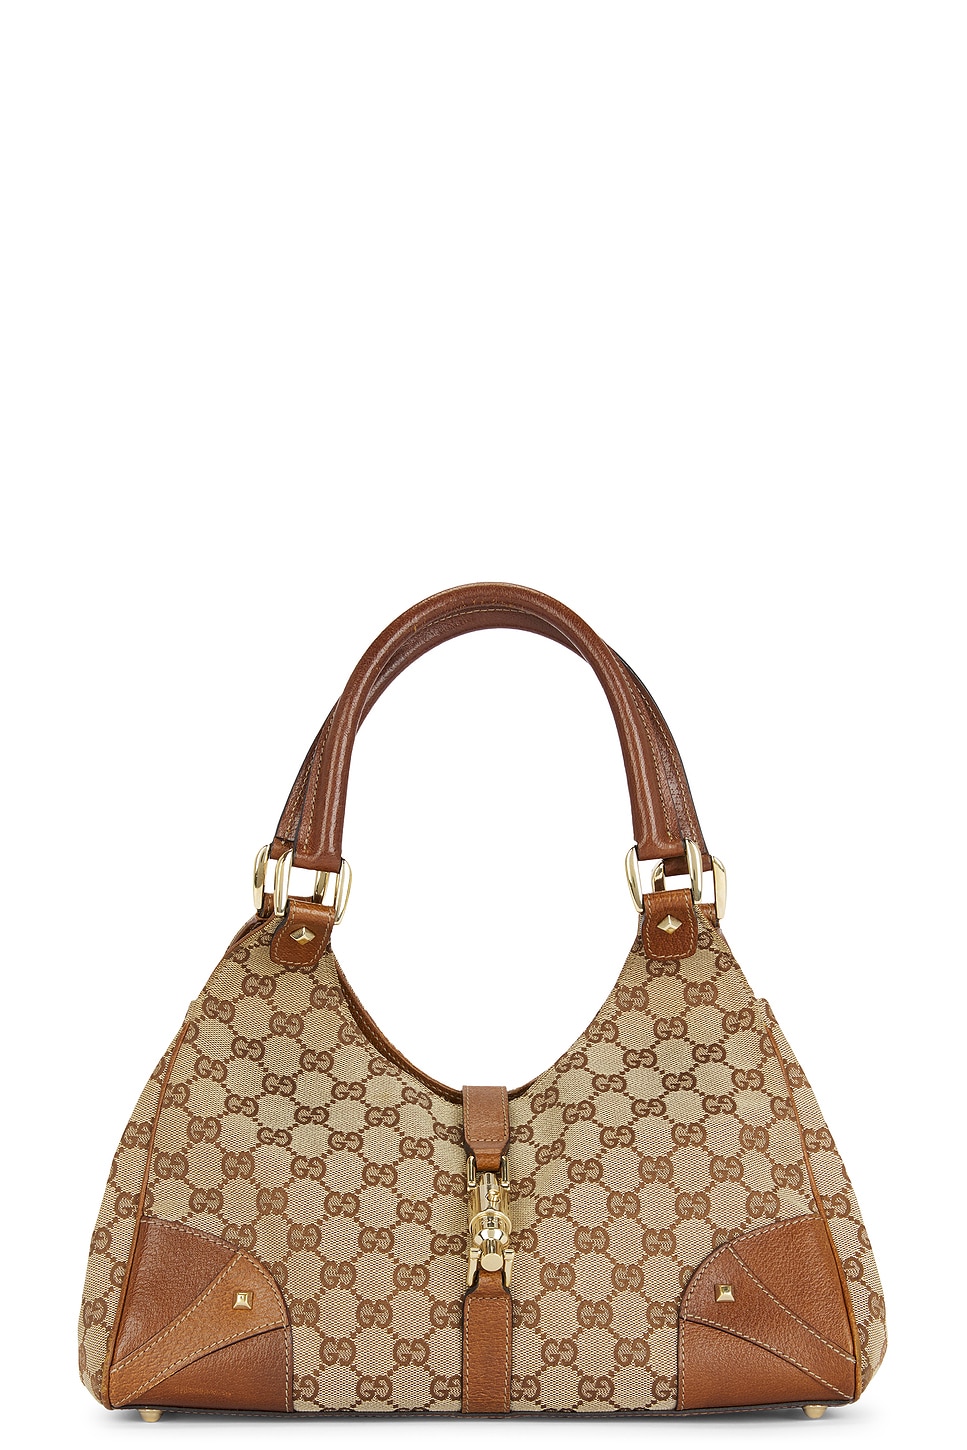 Gucci Jackie Shoulder Bag in Brown